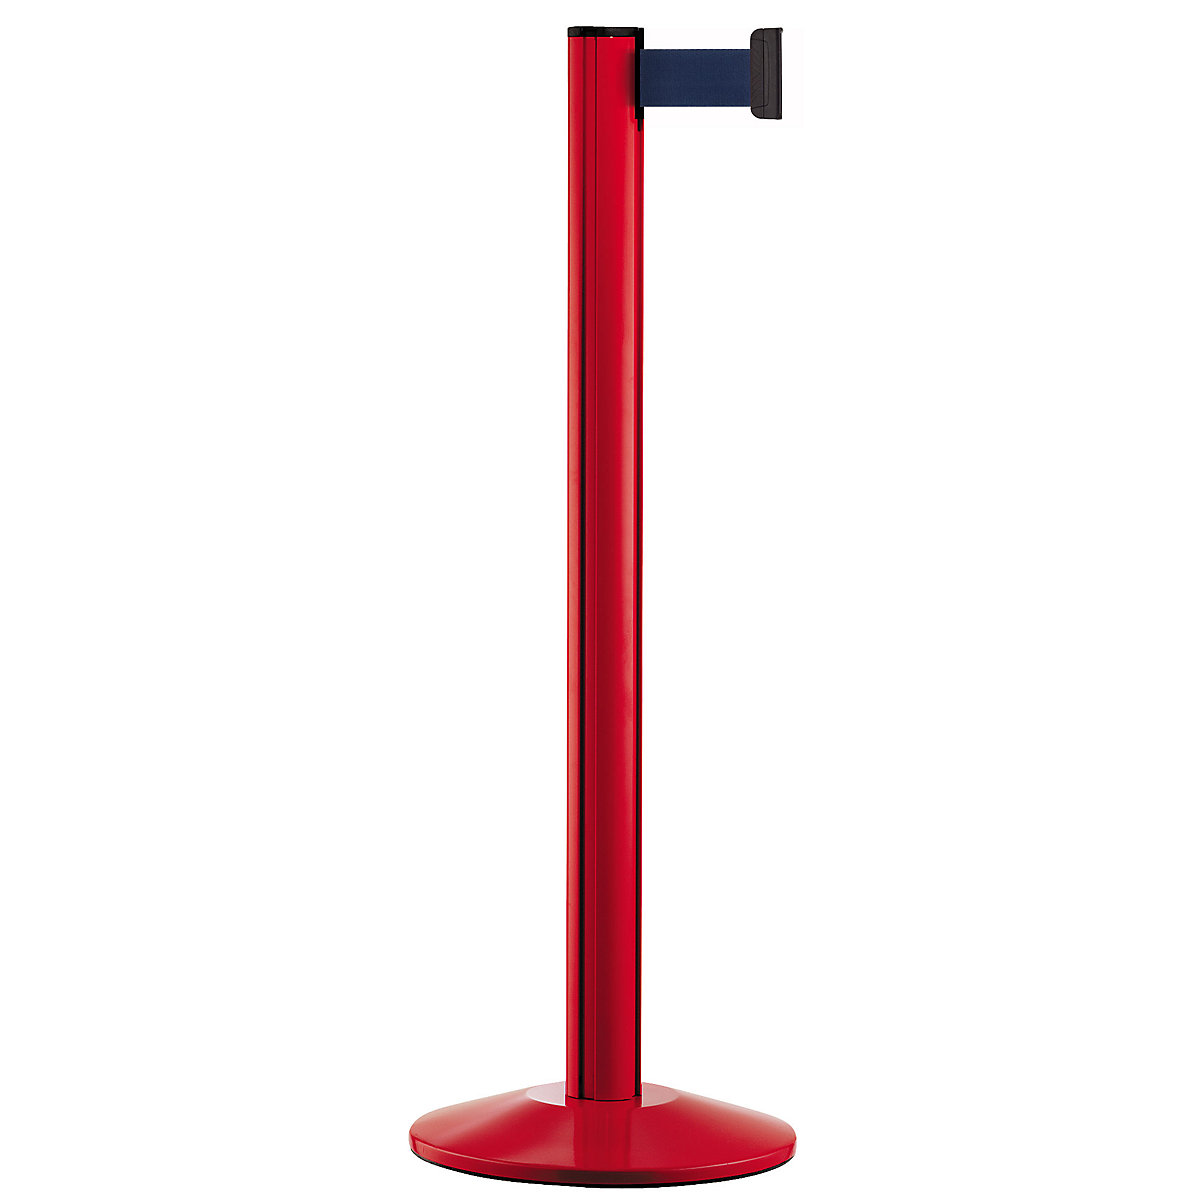 Aluminijski stup s trakom, stupovi u crvenoj boji, s izvlačenjem 2300 mm, traka u boji navy-9